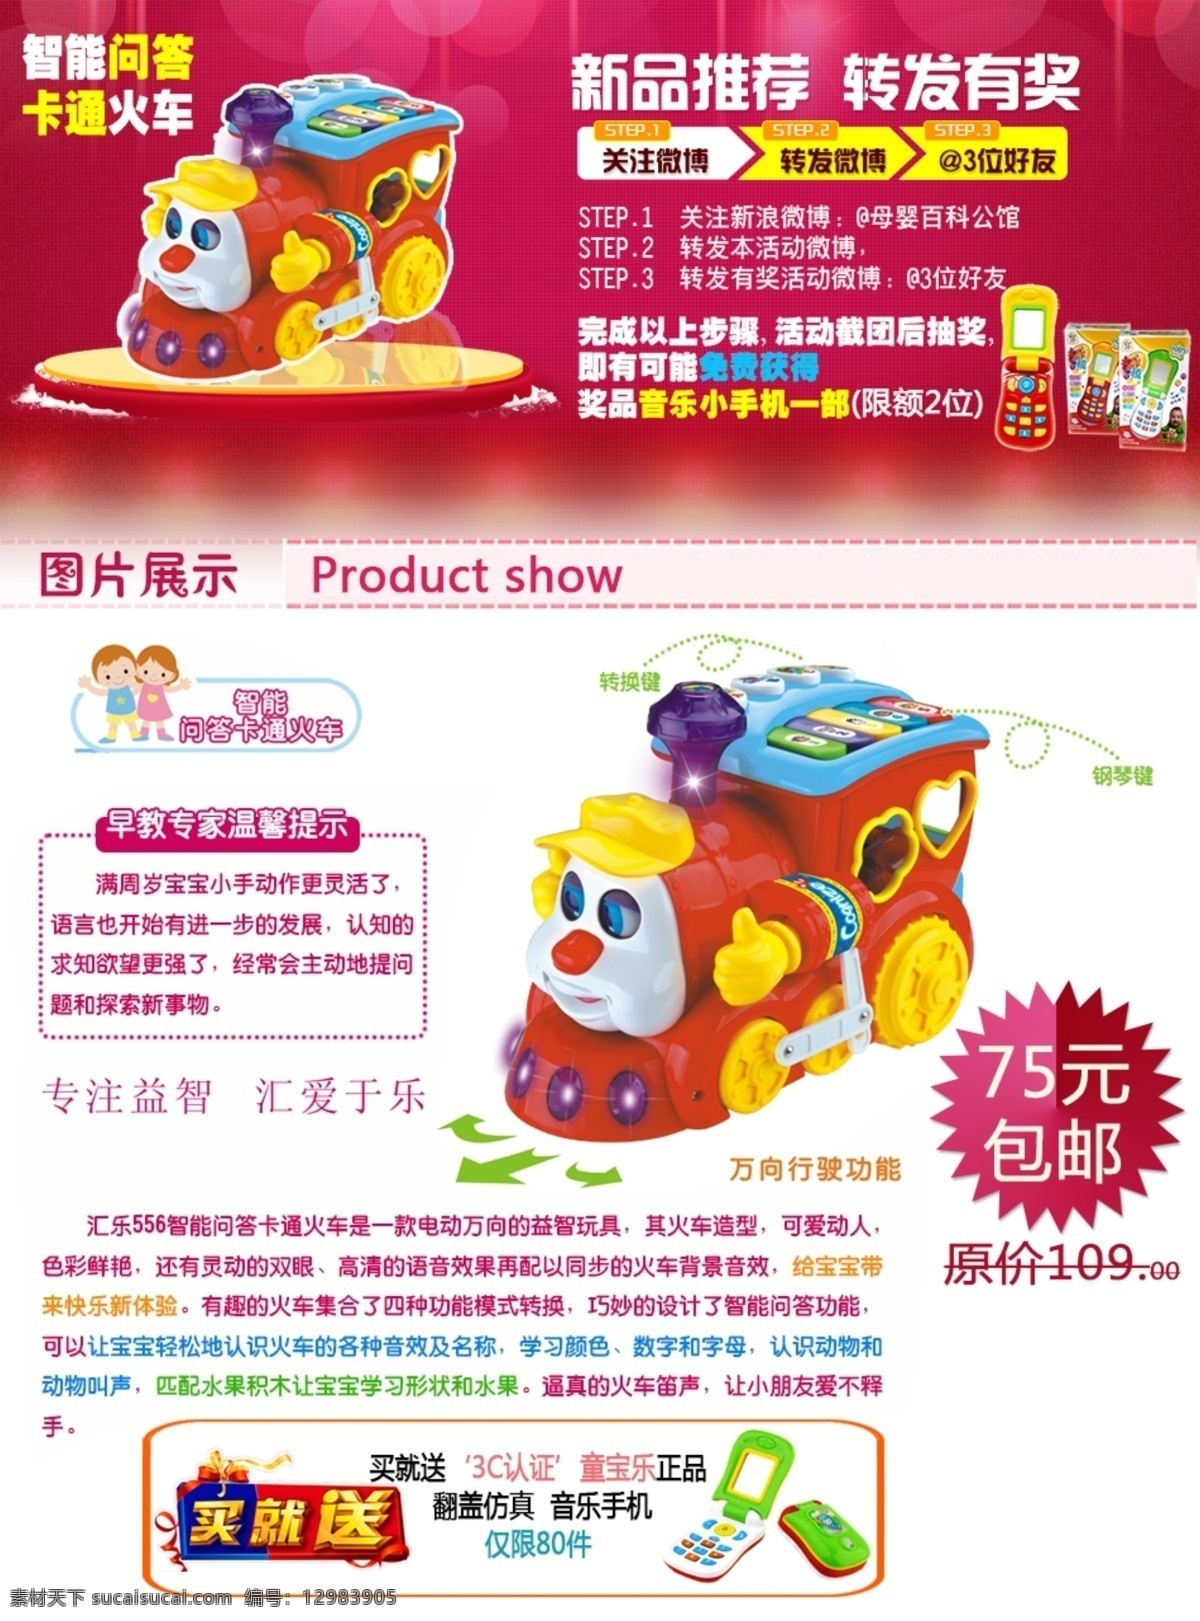 广告 网页 网页模板 微博 有奖 源文件 中文模板 转发 图 模板下载 网页素材